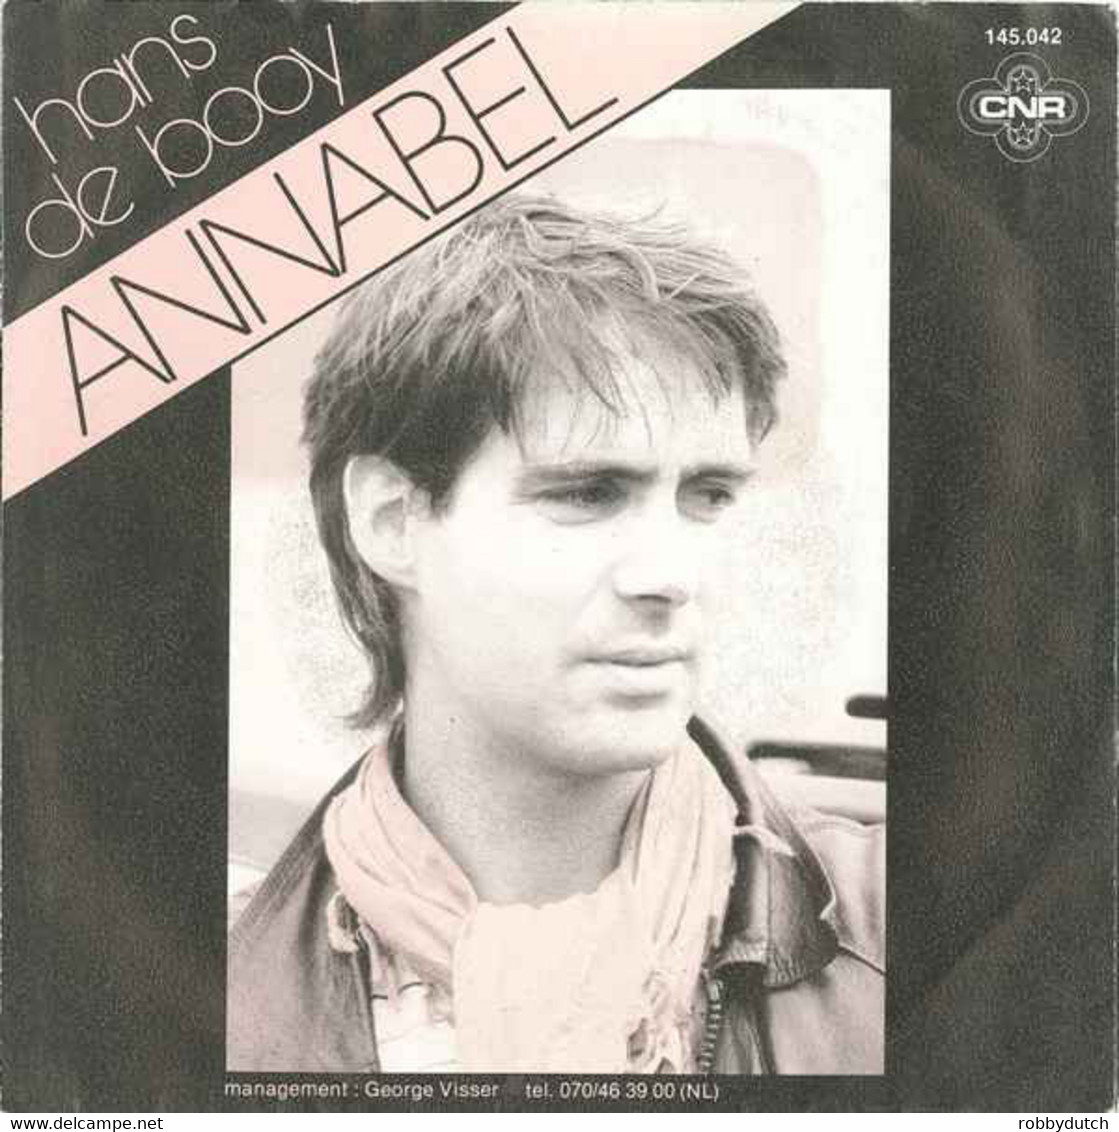 *7" * HANS DE BOOY - ANNABEL (Holland 1983 EX-) - Autres - Musique Néerlandaise